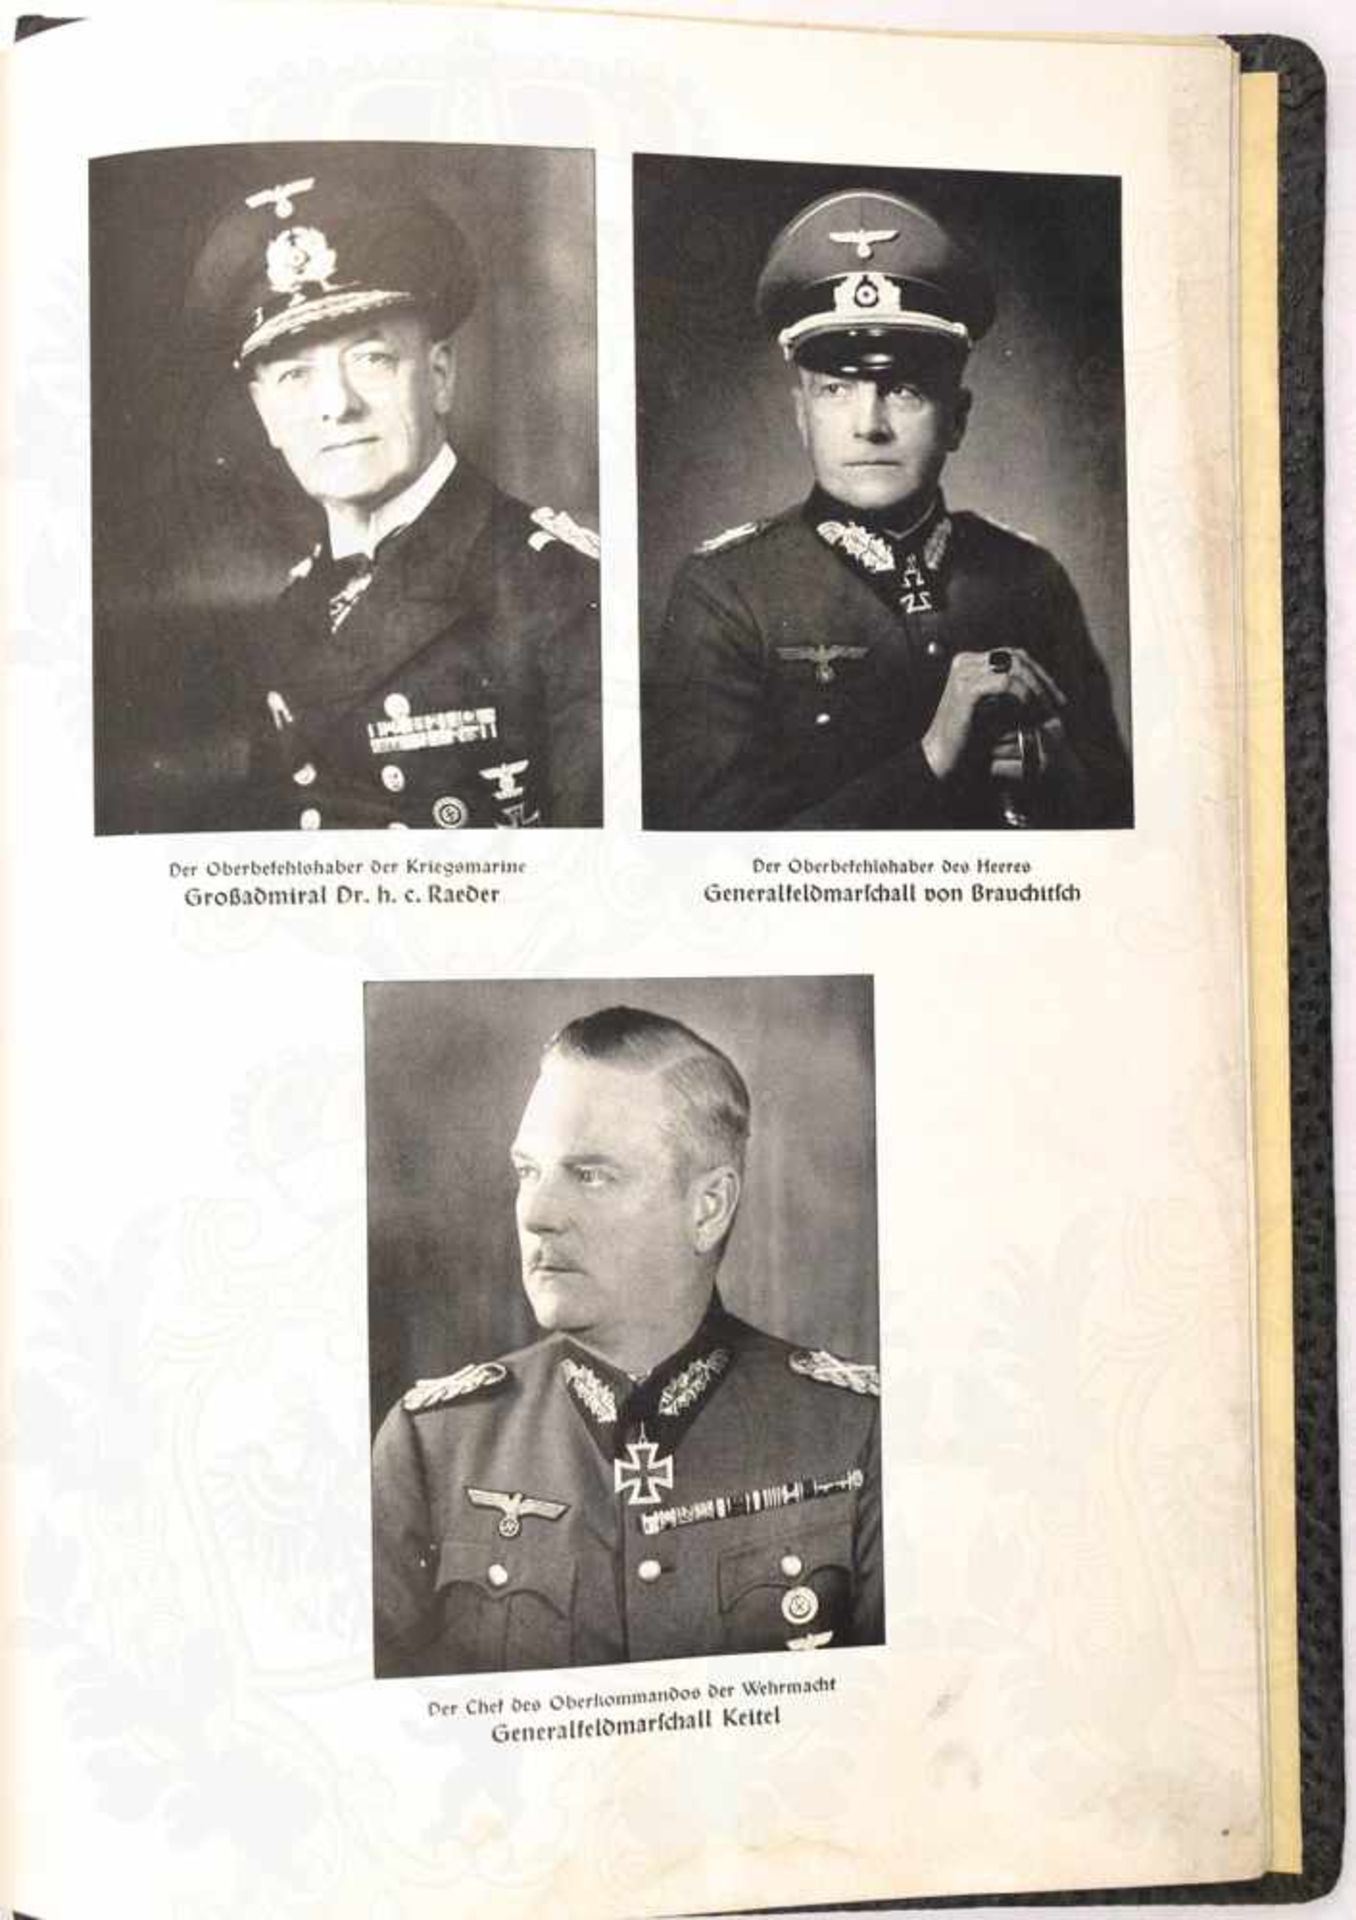 EHREN-CHRONIK, blanko Fotoalbum, m. Textvordrucken u. Bildteil zur Wehrmacht, u.a. Funktruppen im - Bild 2 aus 2